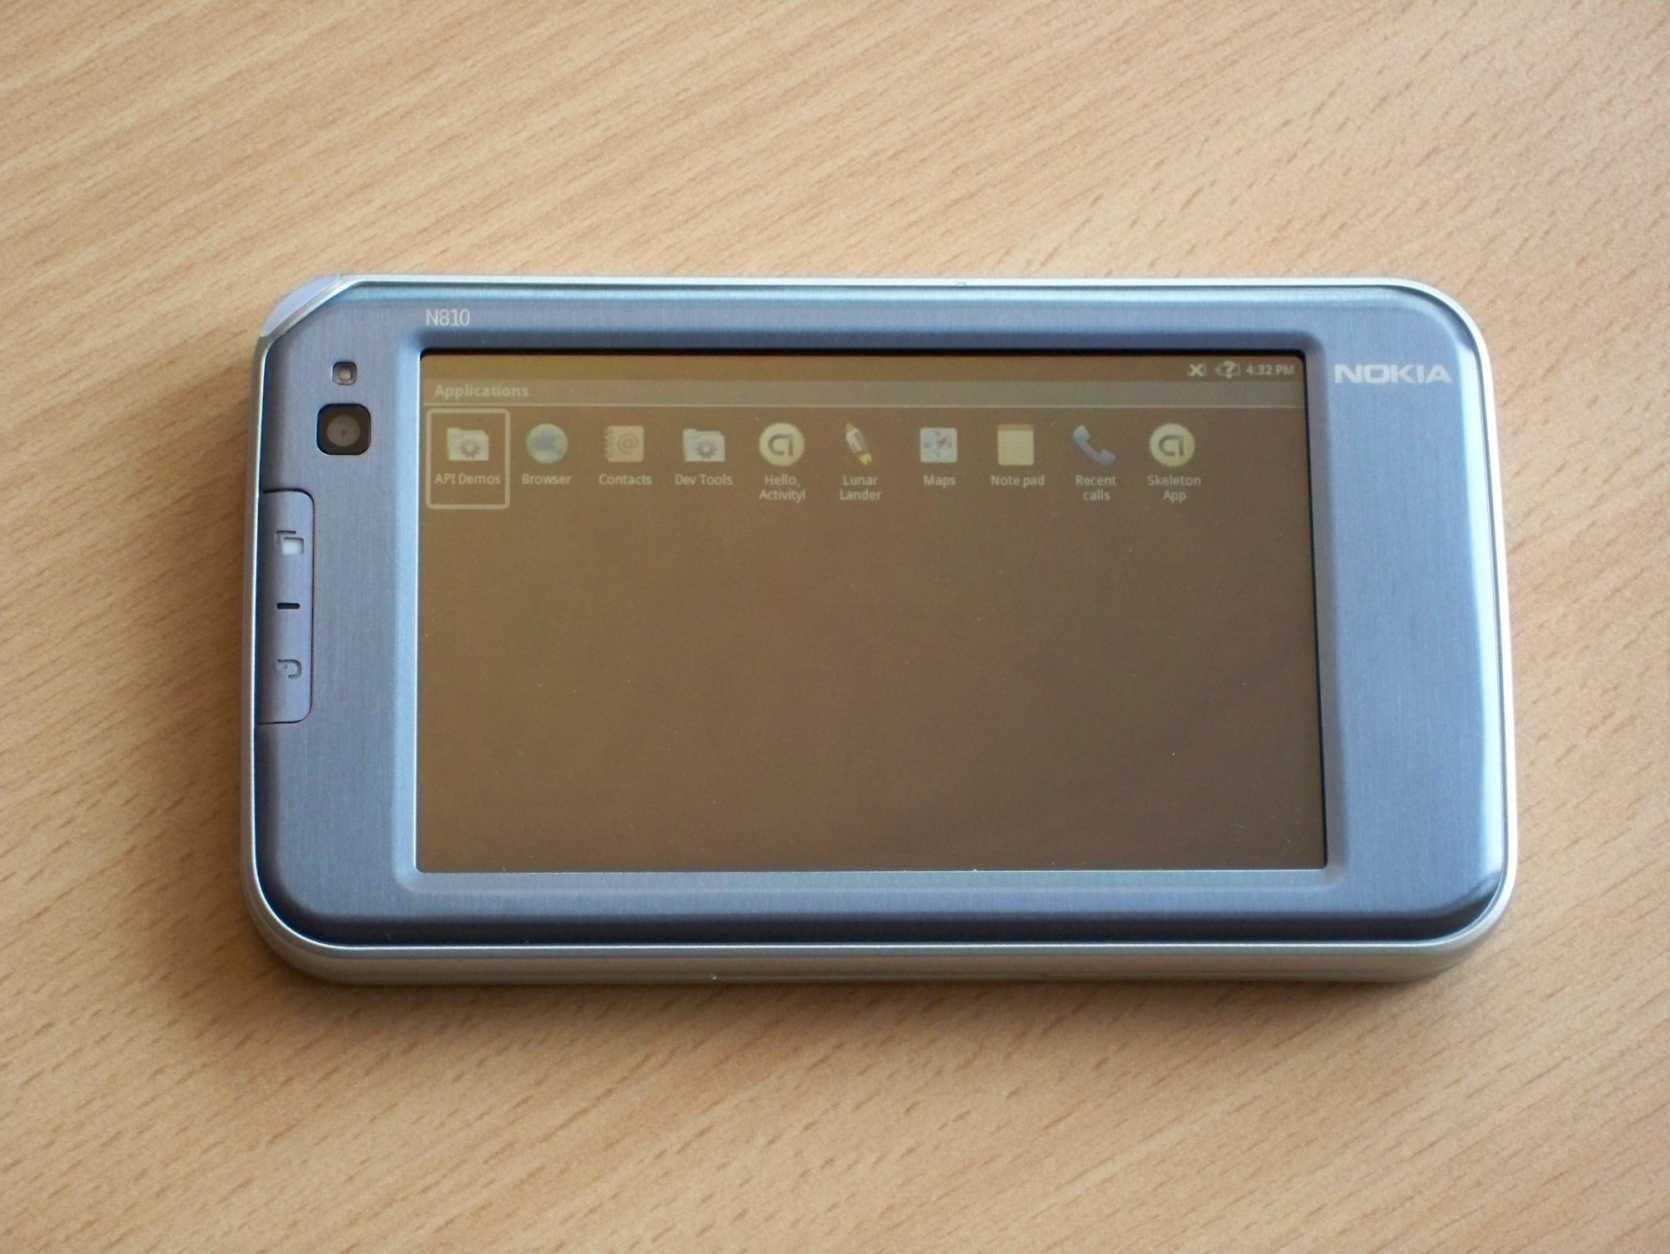 Nokia n810 цена, где купить, сравнение цен